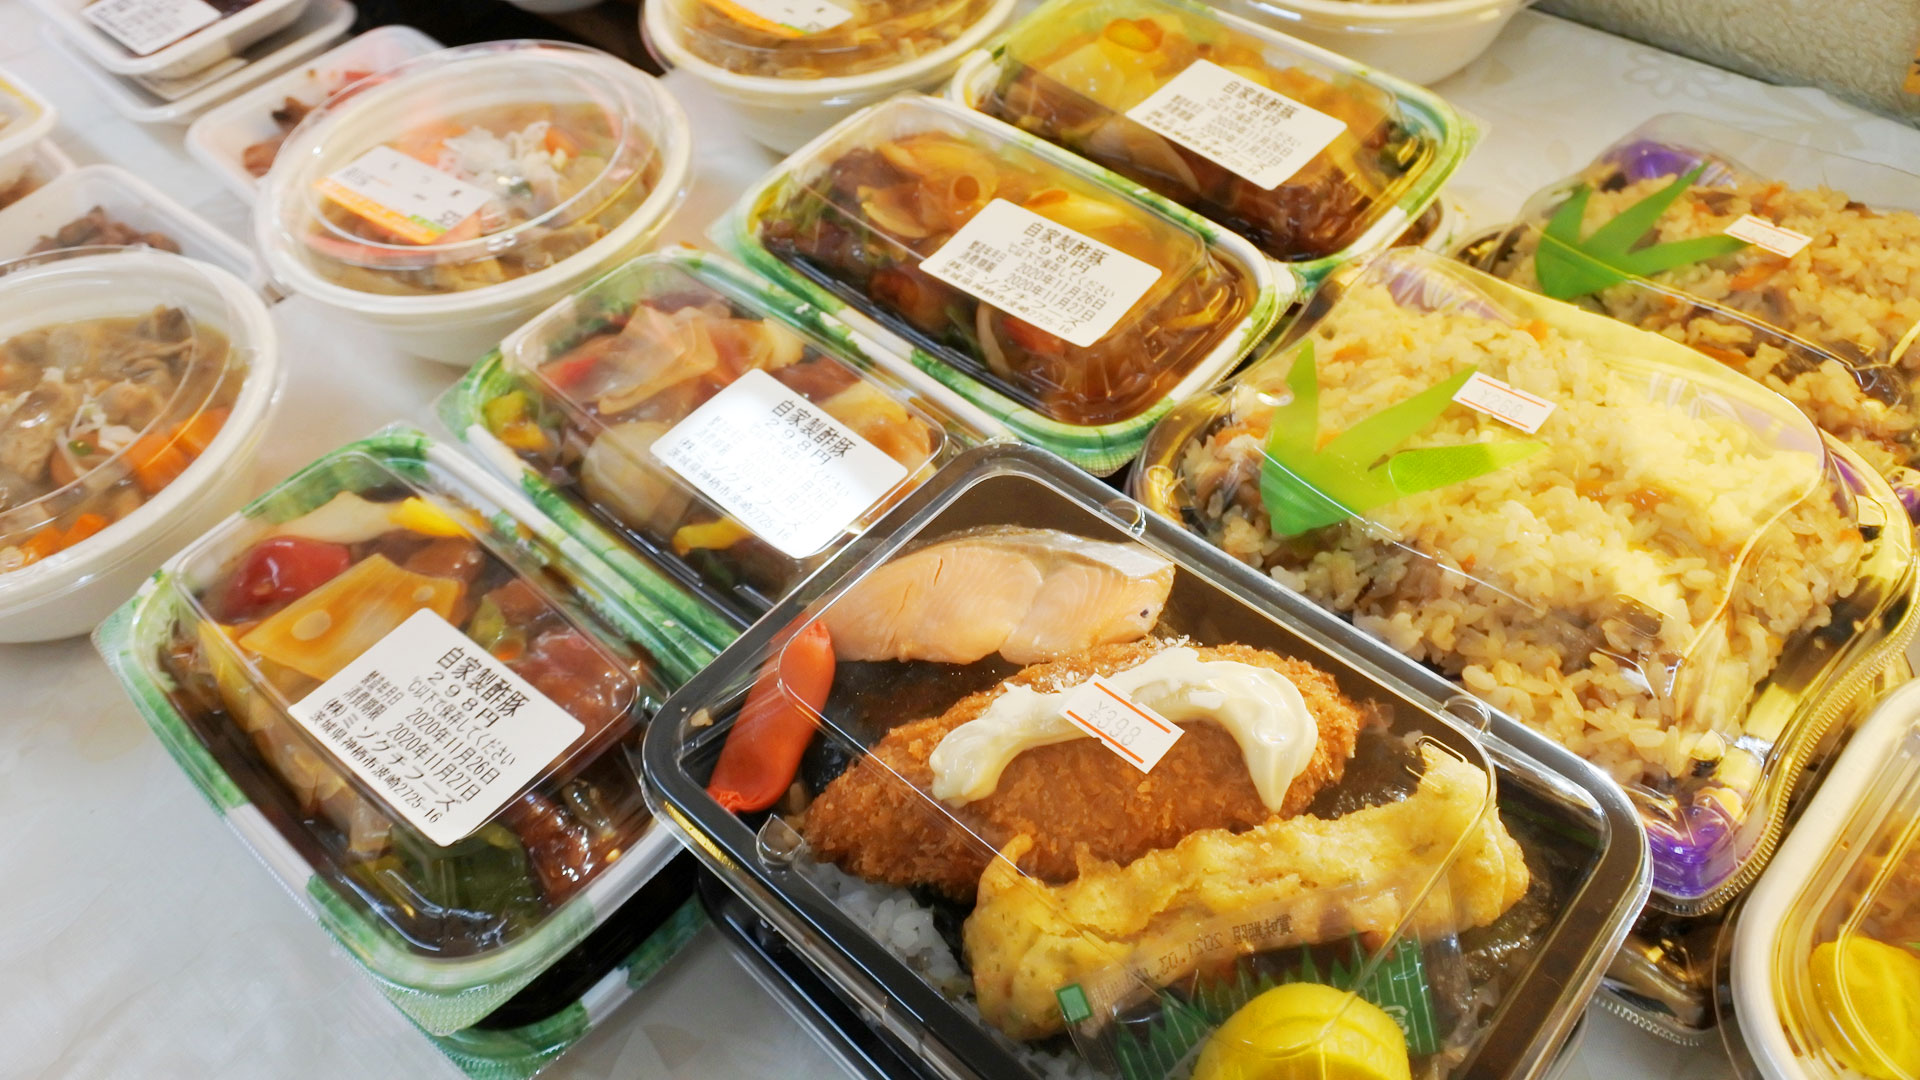 茨城県神栖市波崎の食肉加工卸売会社「ミゾグチフード」は、レストラン「コロッケ」にてリーズナブルでボリューム満点の惣菜、お弁当の製造販売をおこなっております。